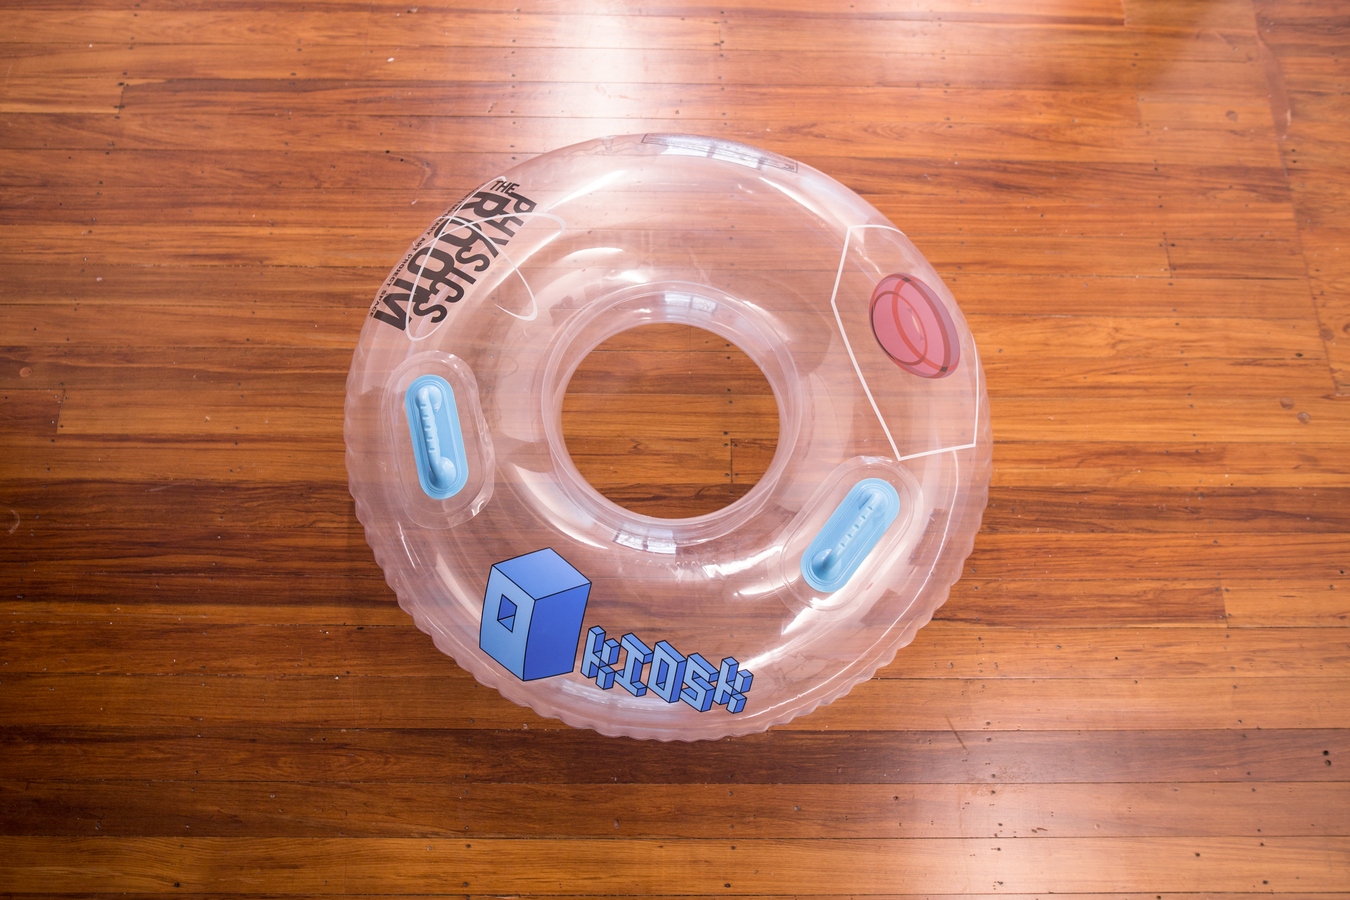 Image: Eddie Clemens, Donut (installation view), 2020. Photo: Janneth Gil.